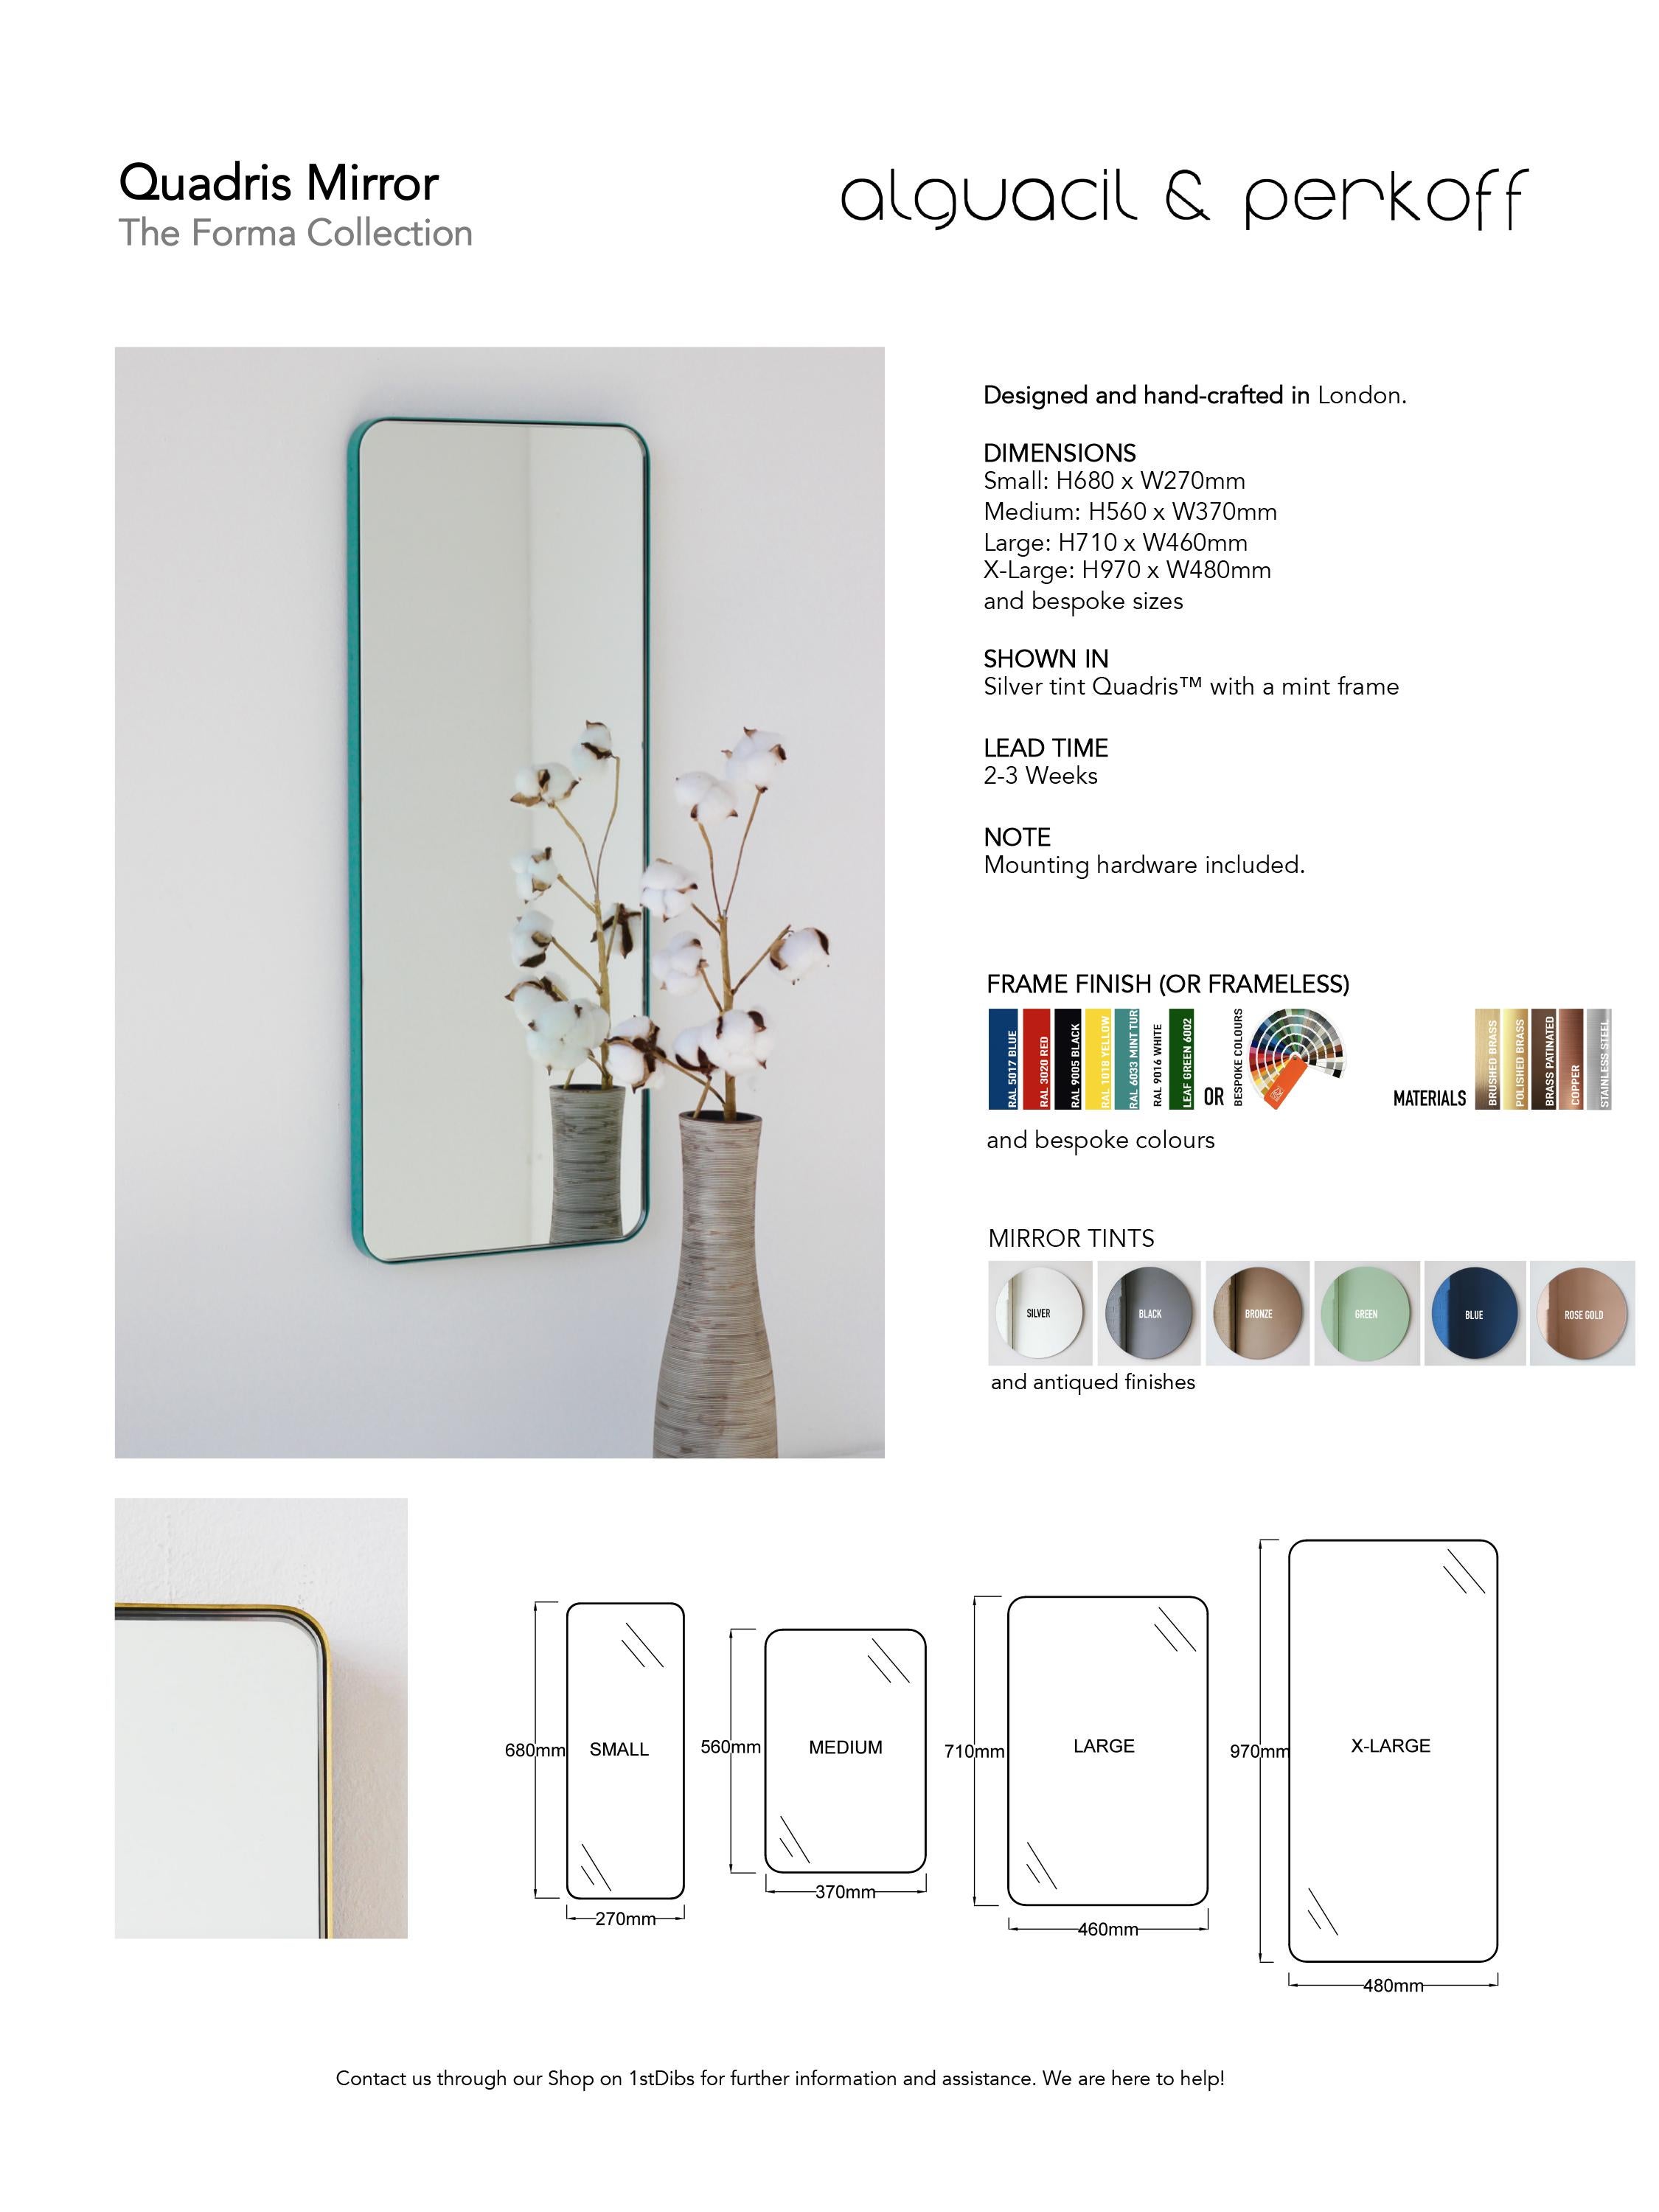 Quadris Blue Rectangular Frameless Contemporary Mirror, Medium For Sale 3